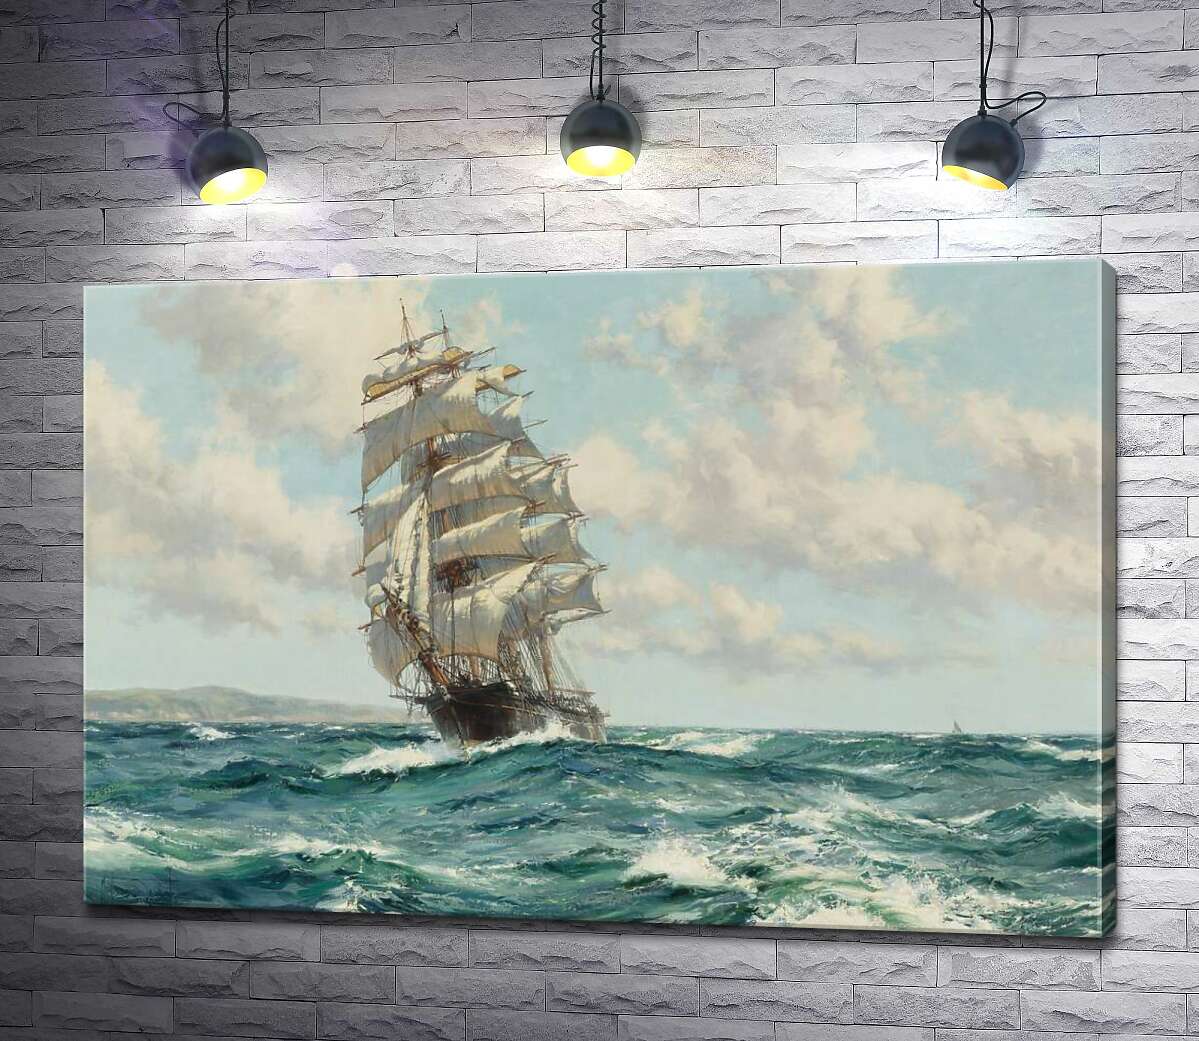 картина Корабль клипер у берегов Северной Америки (Clipper Ship North America) – Монтегю Доусон (Montague Dawson)